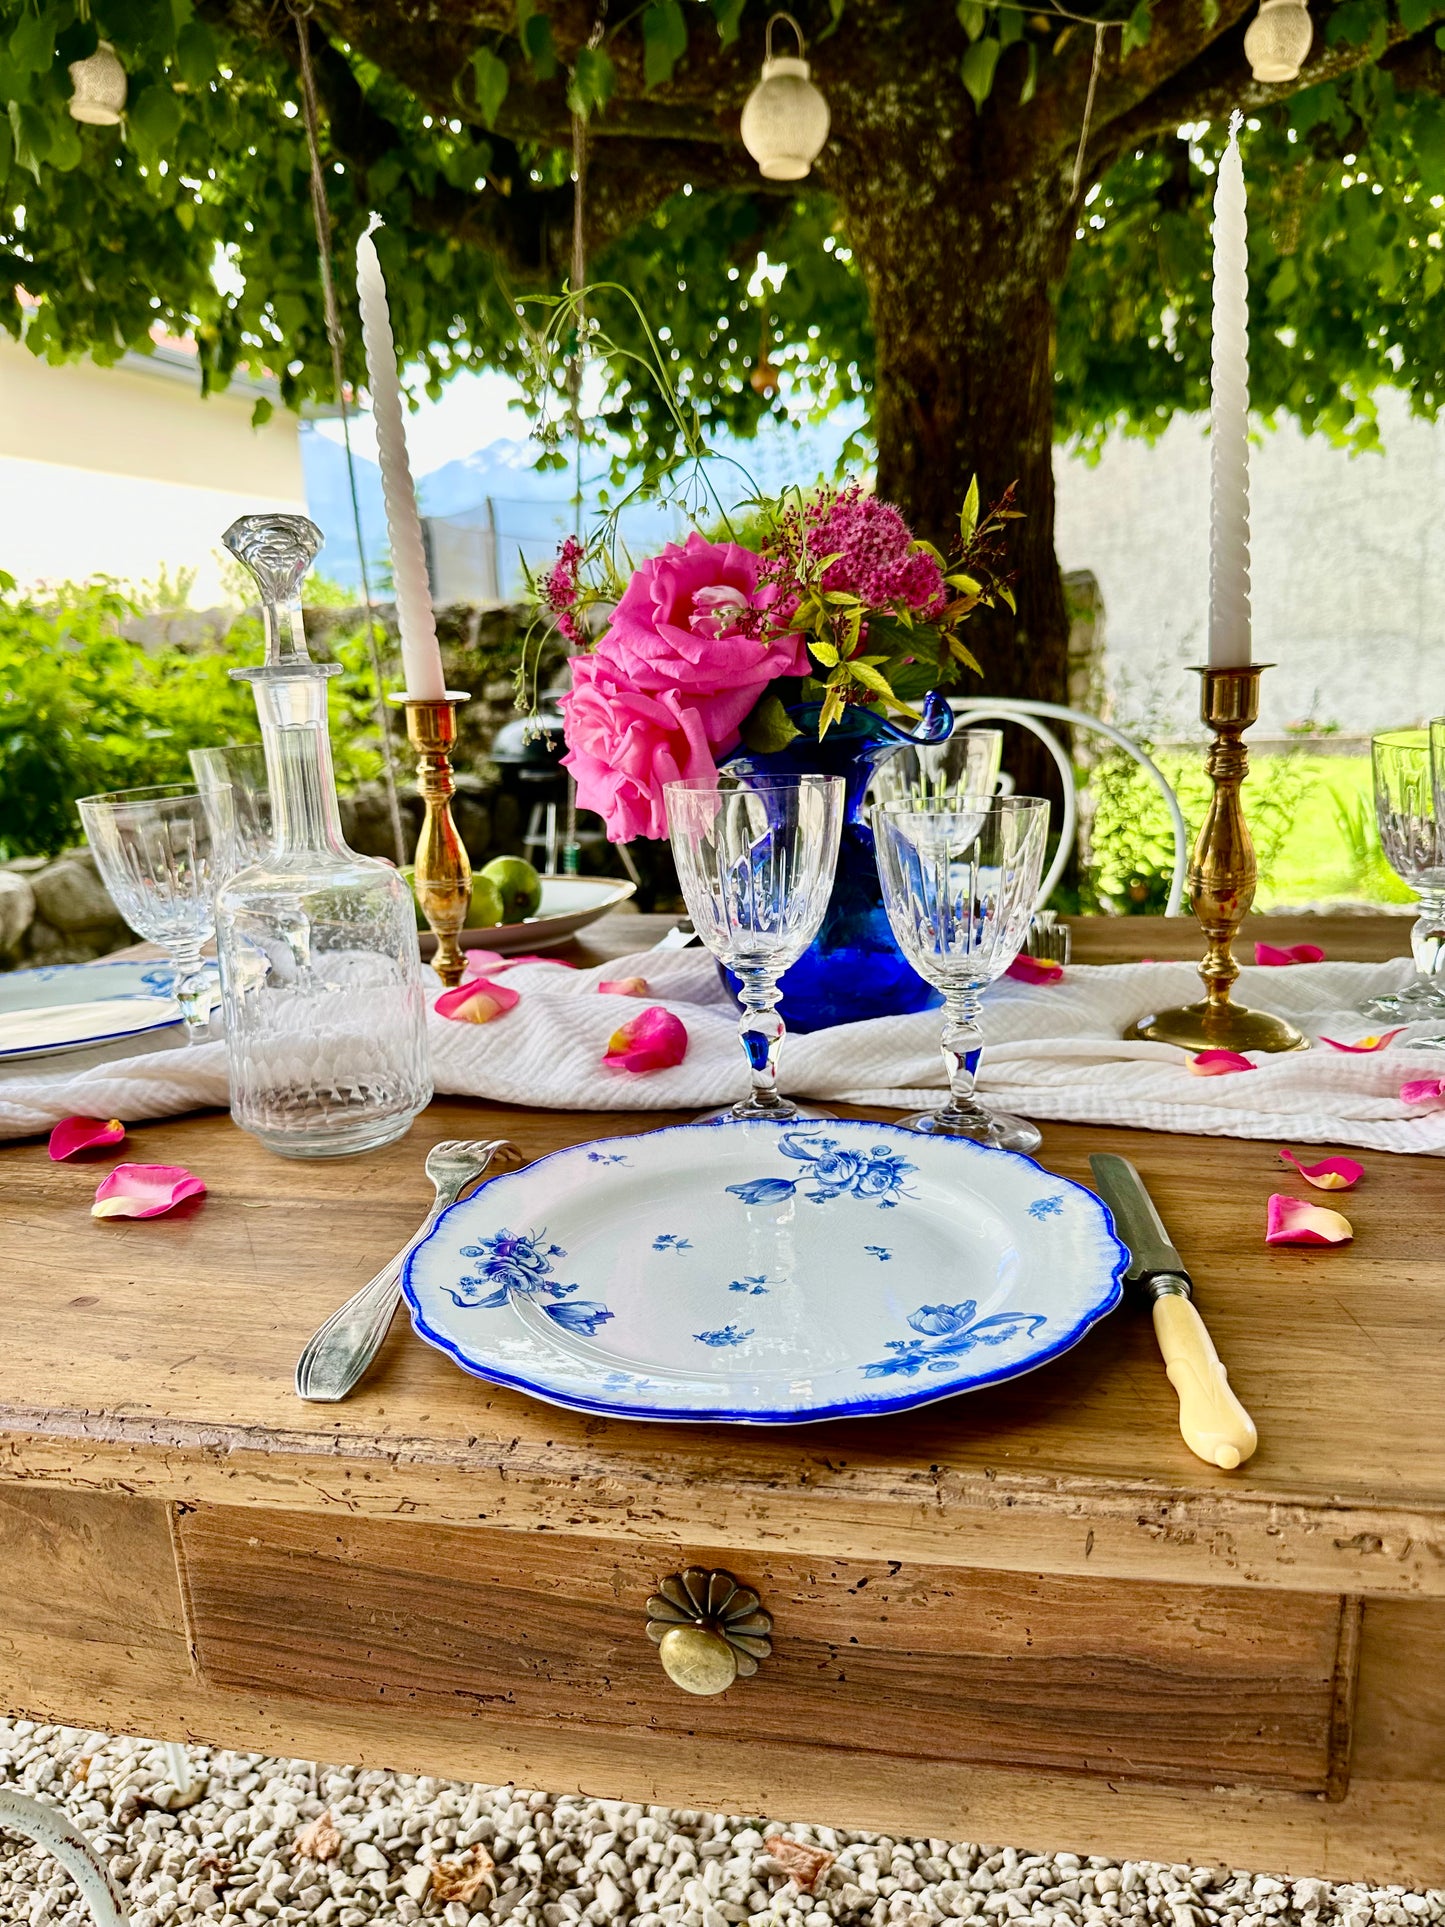 Assiette plate en faïence bleue fleurie De Raymonde à Zoé